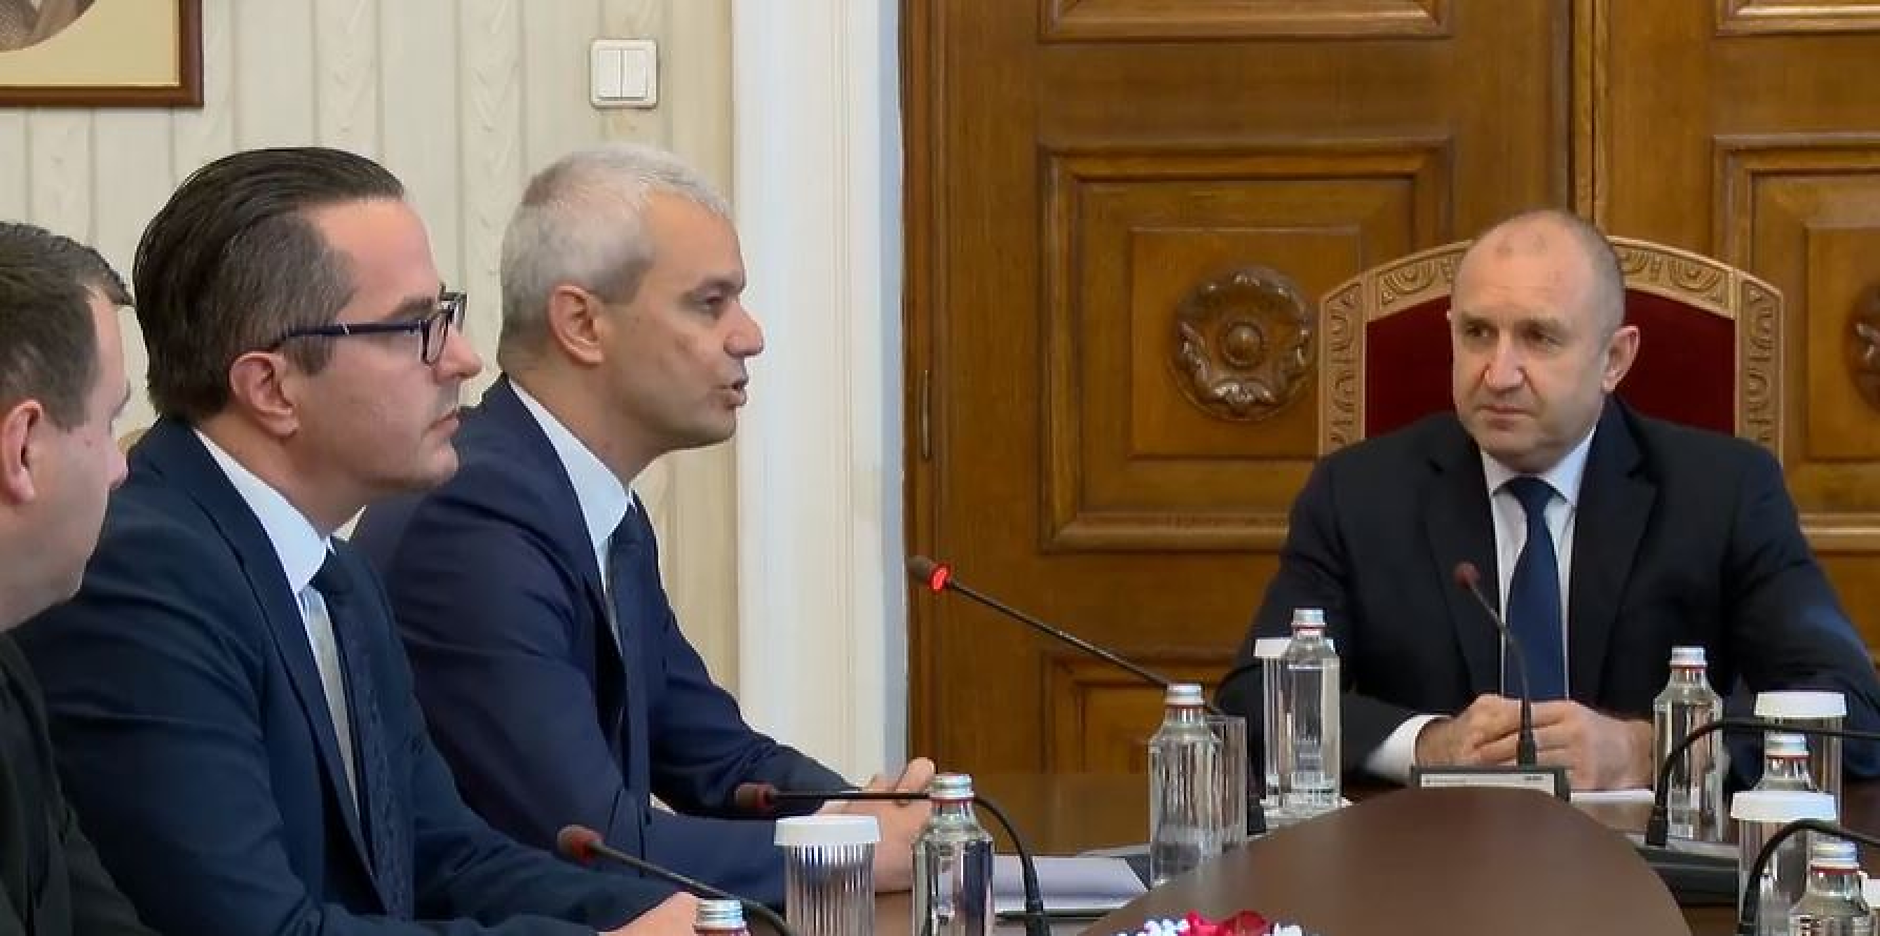 Костадинов пред президента: Всички разговори за еврозоната са опит за пълзящ държавен преврат